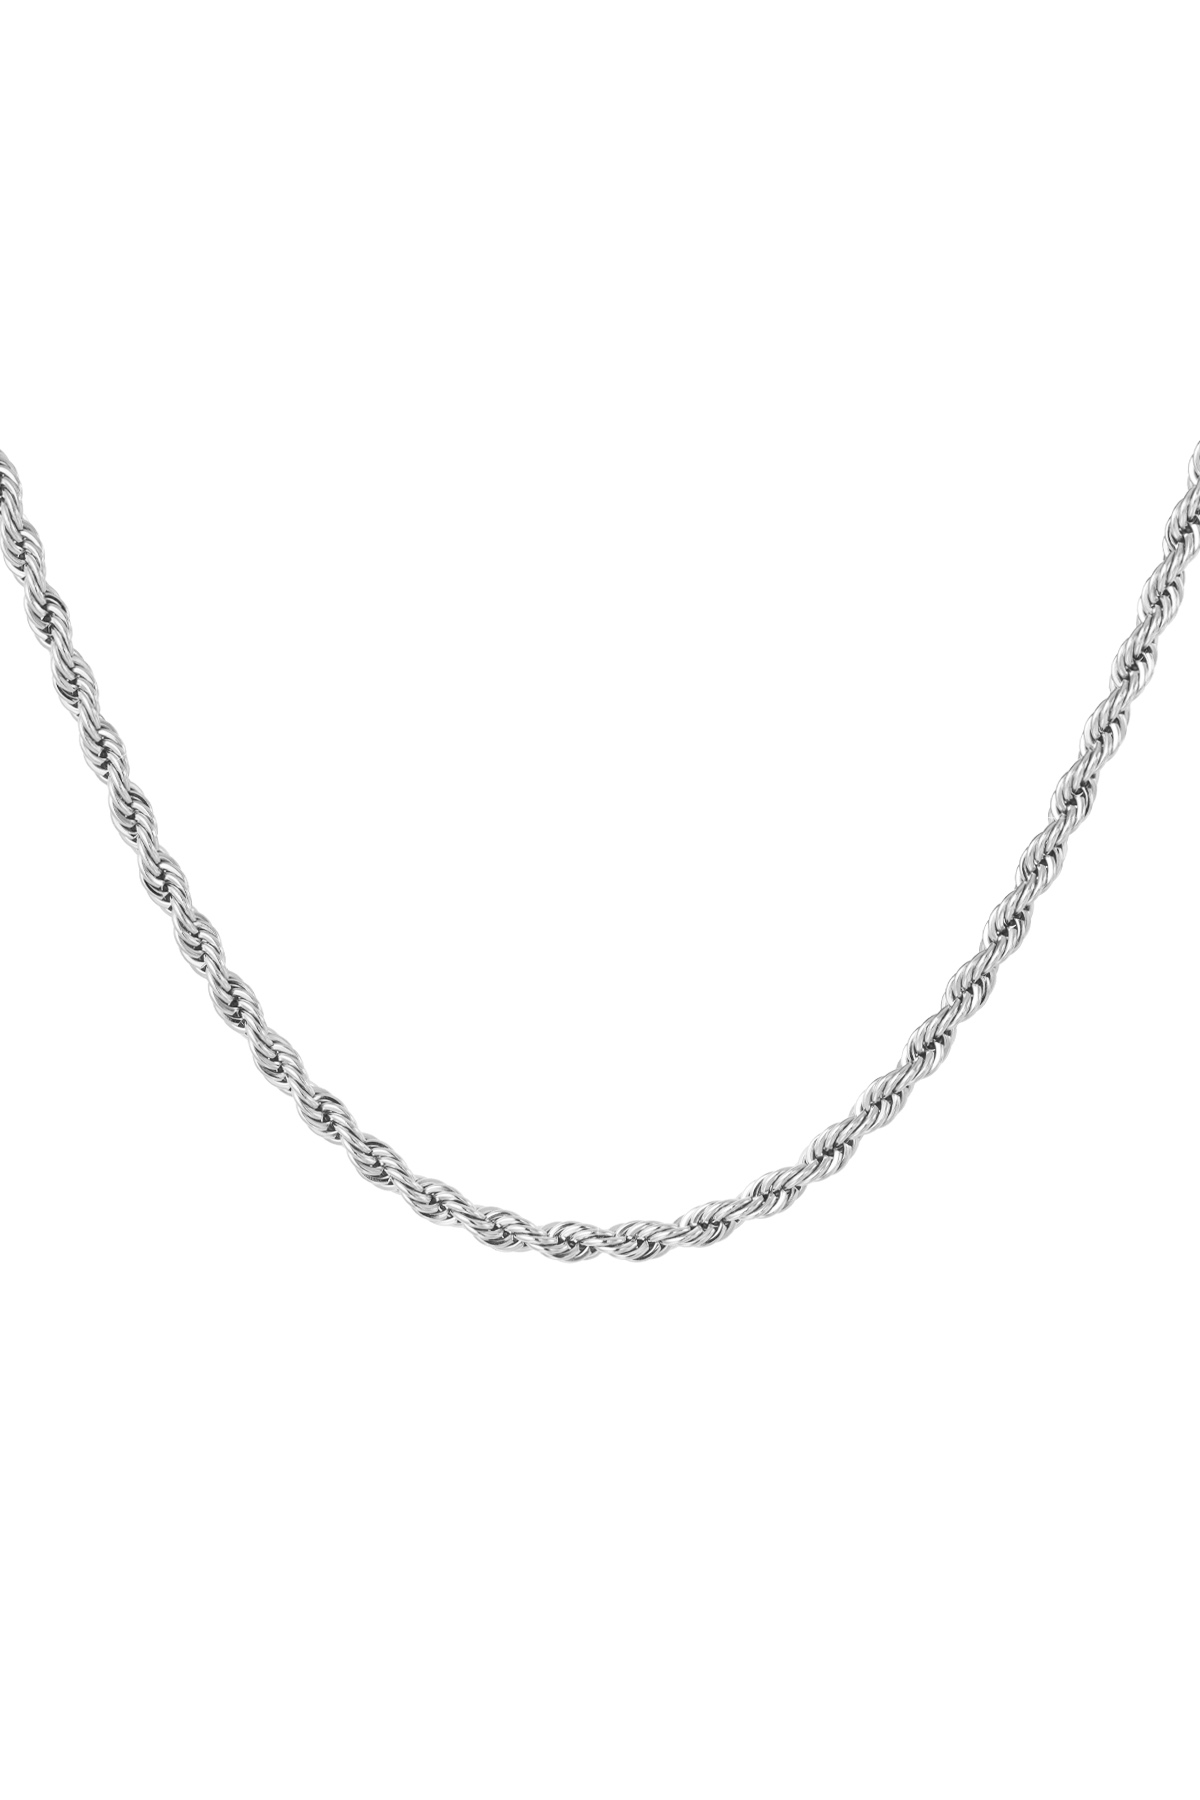 Collar unisex retorcido 50cm - plata-4.0MM